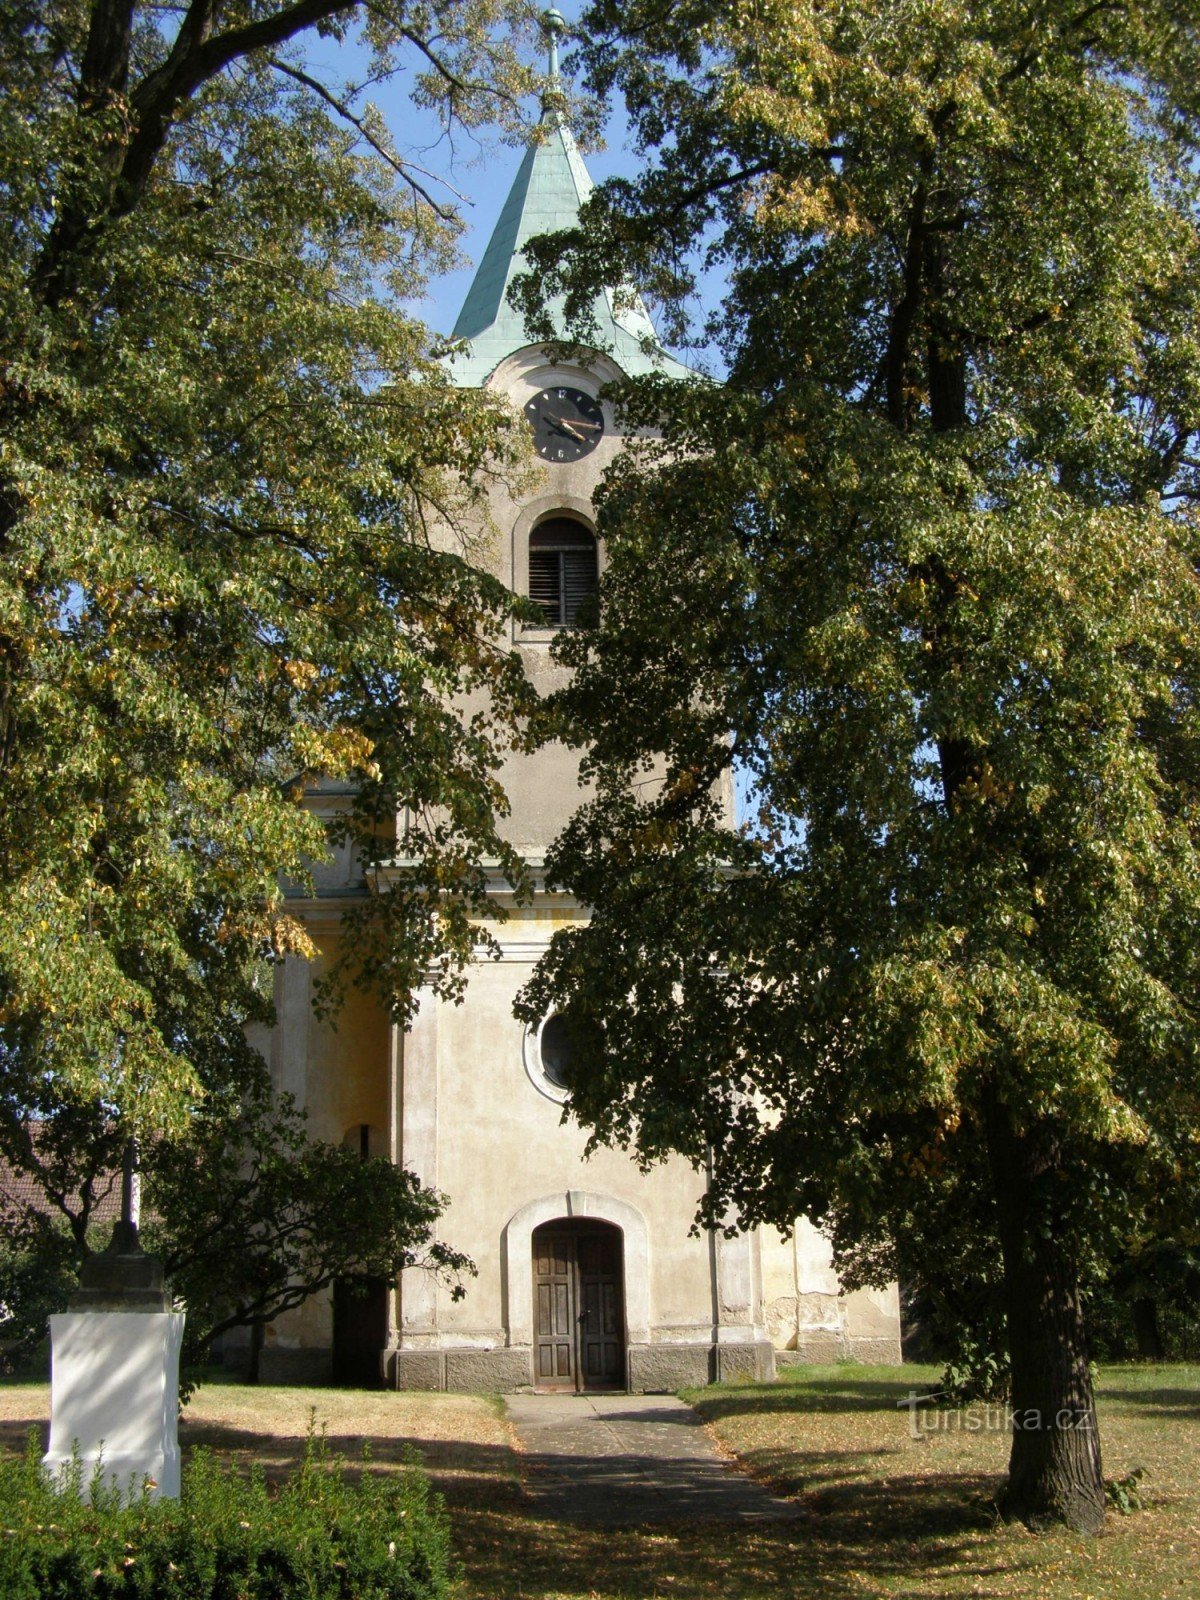 Kratonohy - kościół św. Jakub Większy